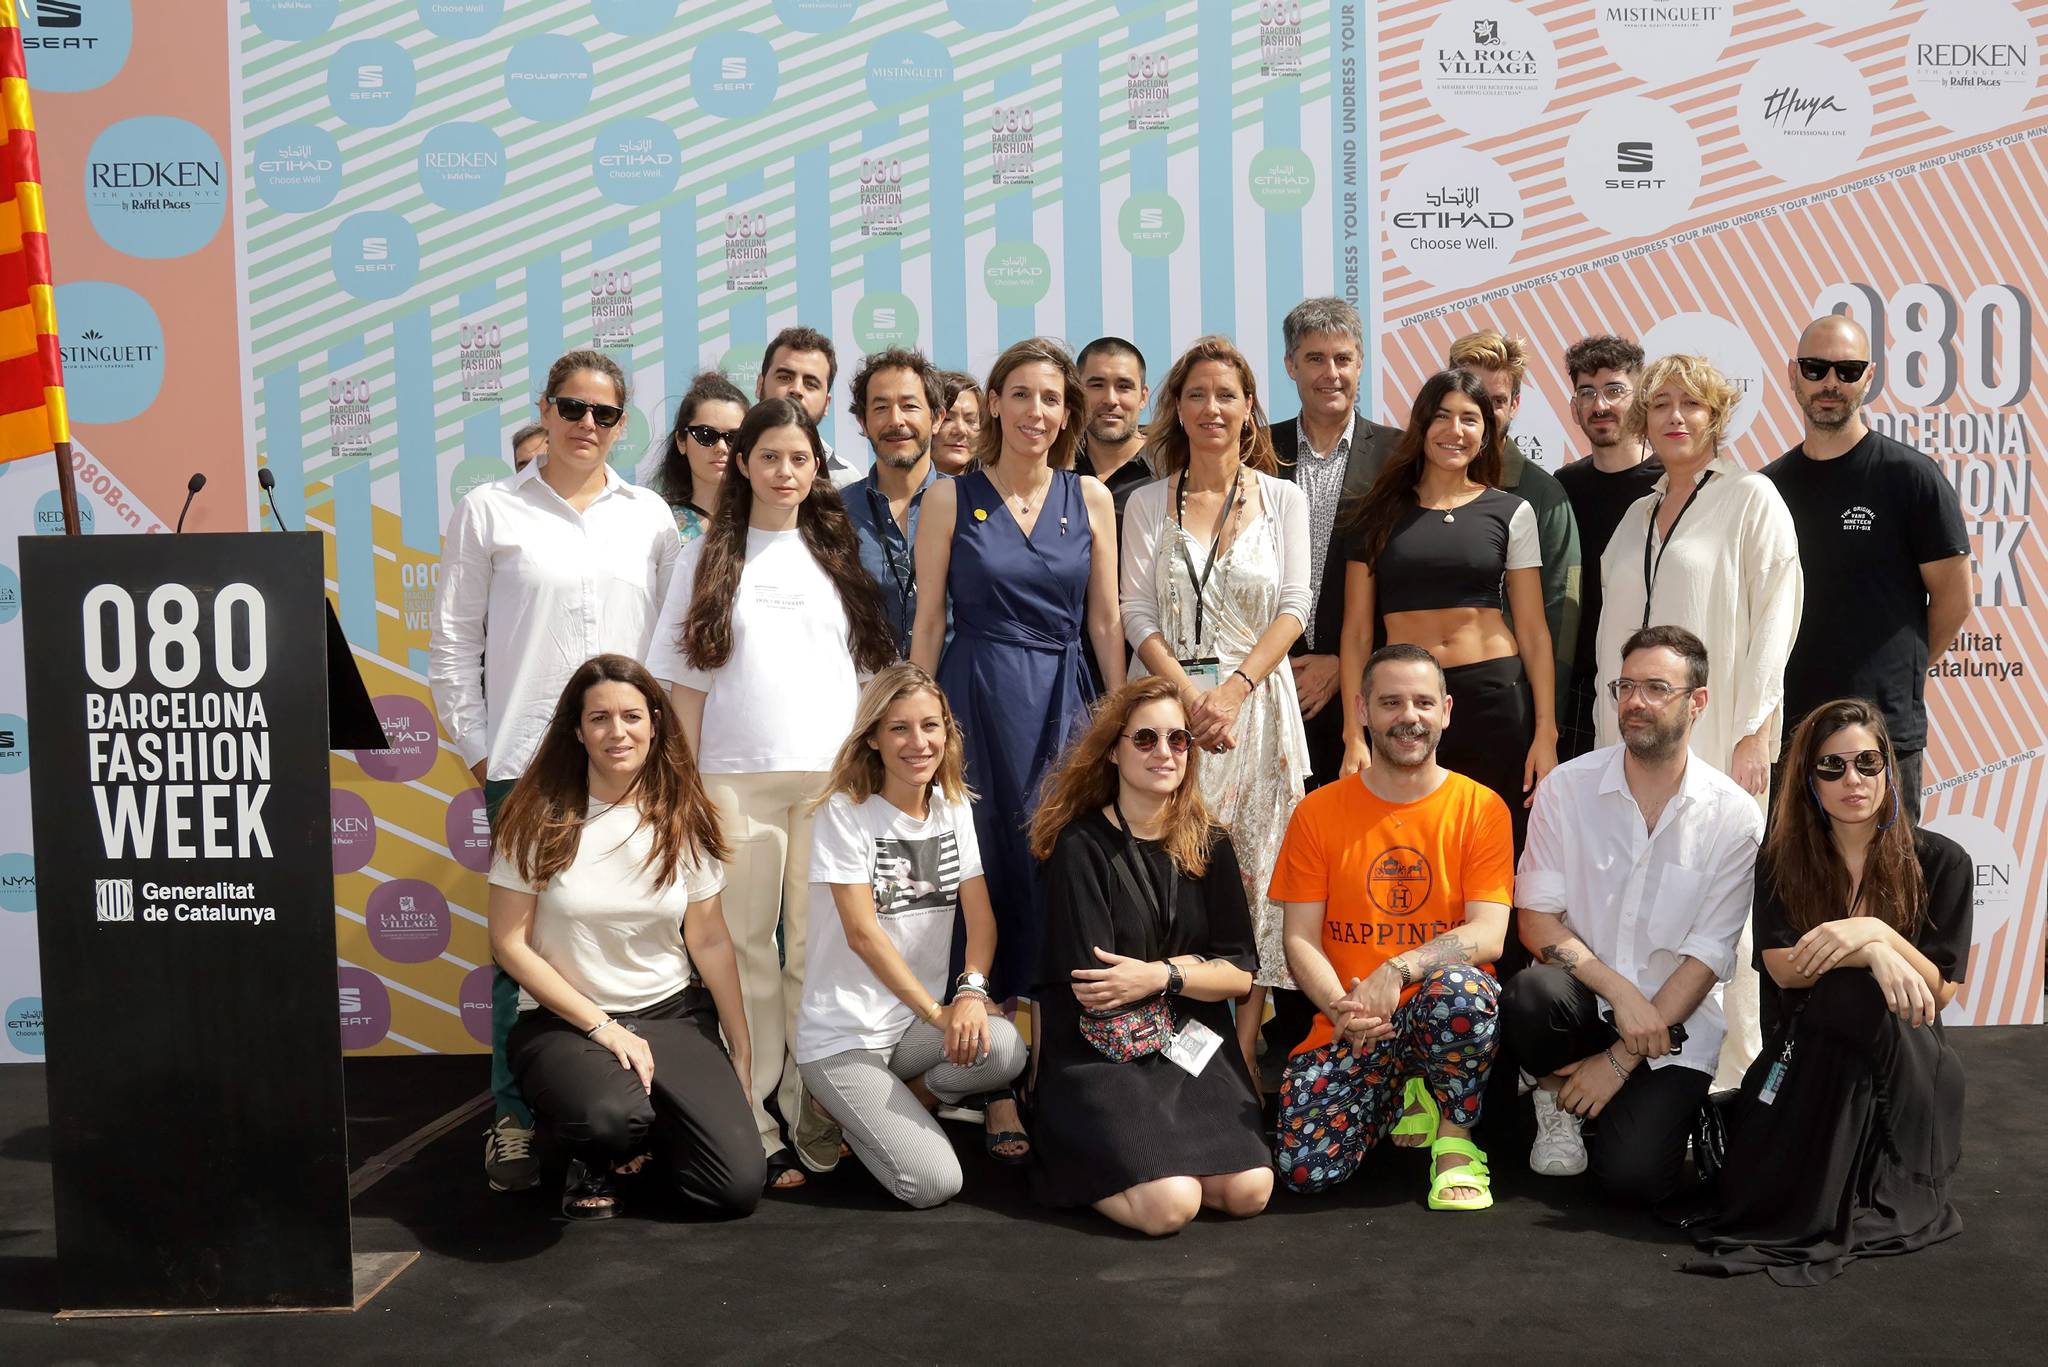 El 080 Barcelona Fashion apuesta por la moda sostenible, la tecnología y el compromiso social